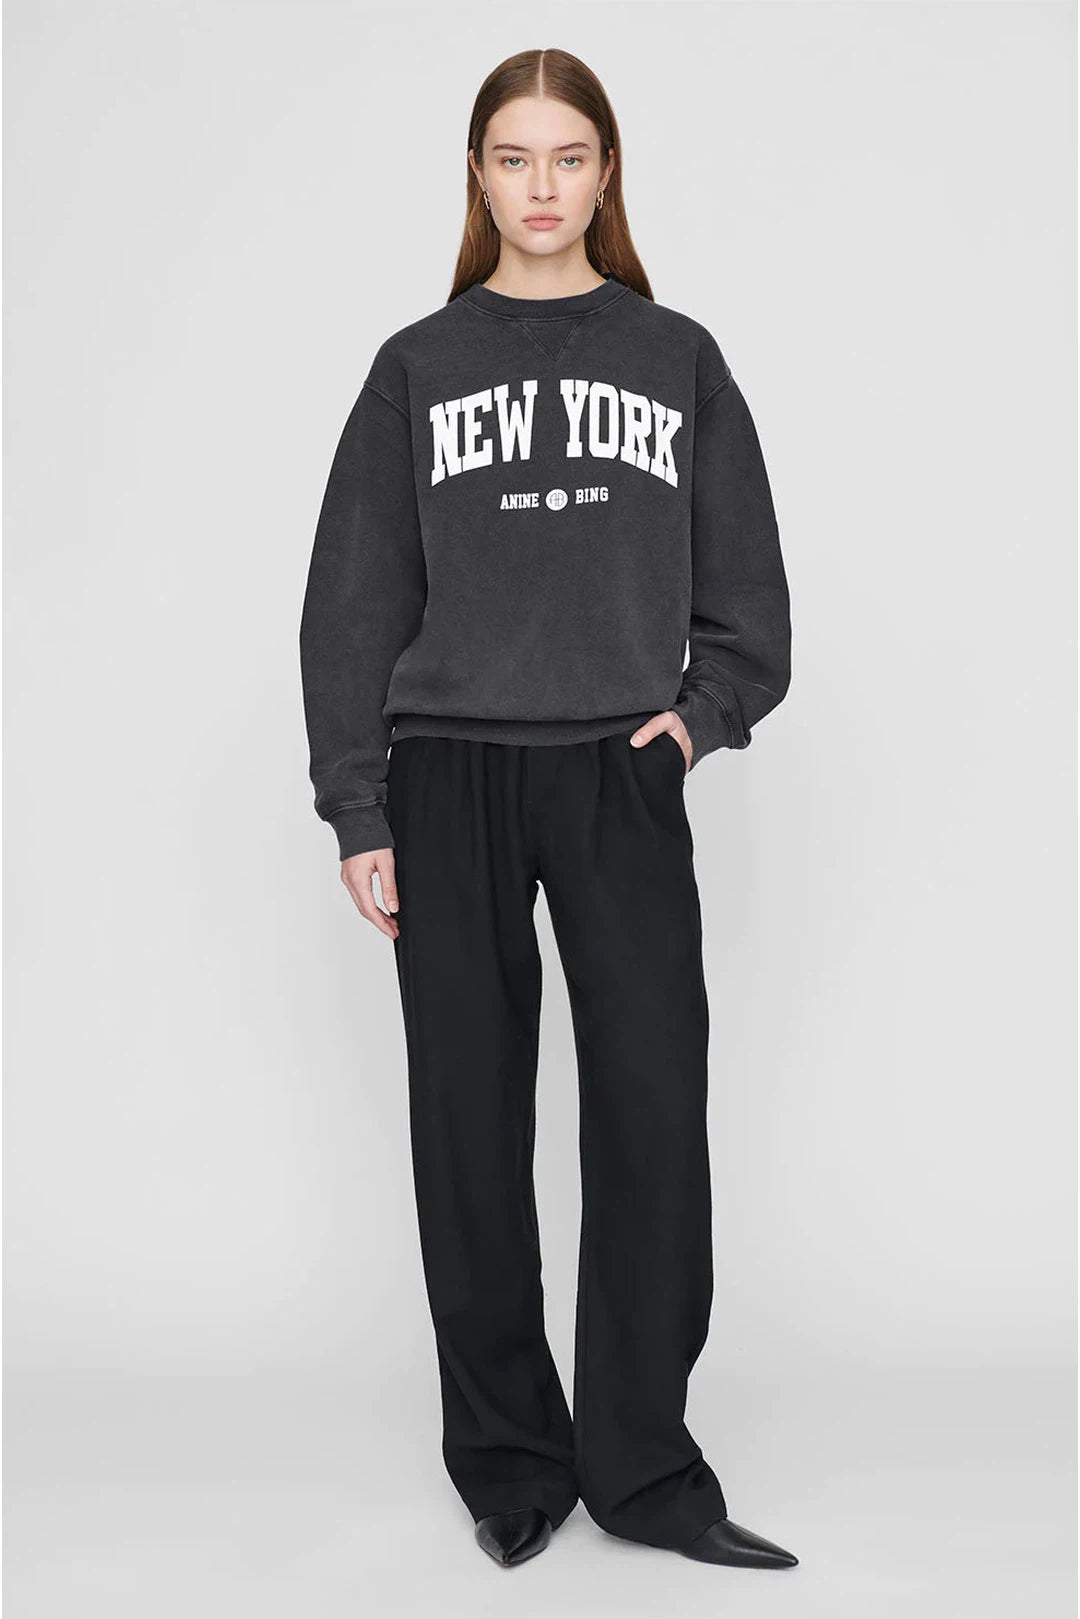 PREORDER Ramona sweatshirt university new york, washed black